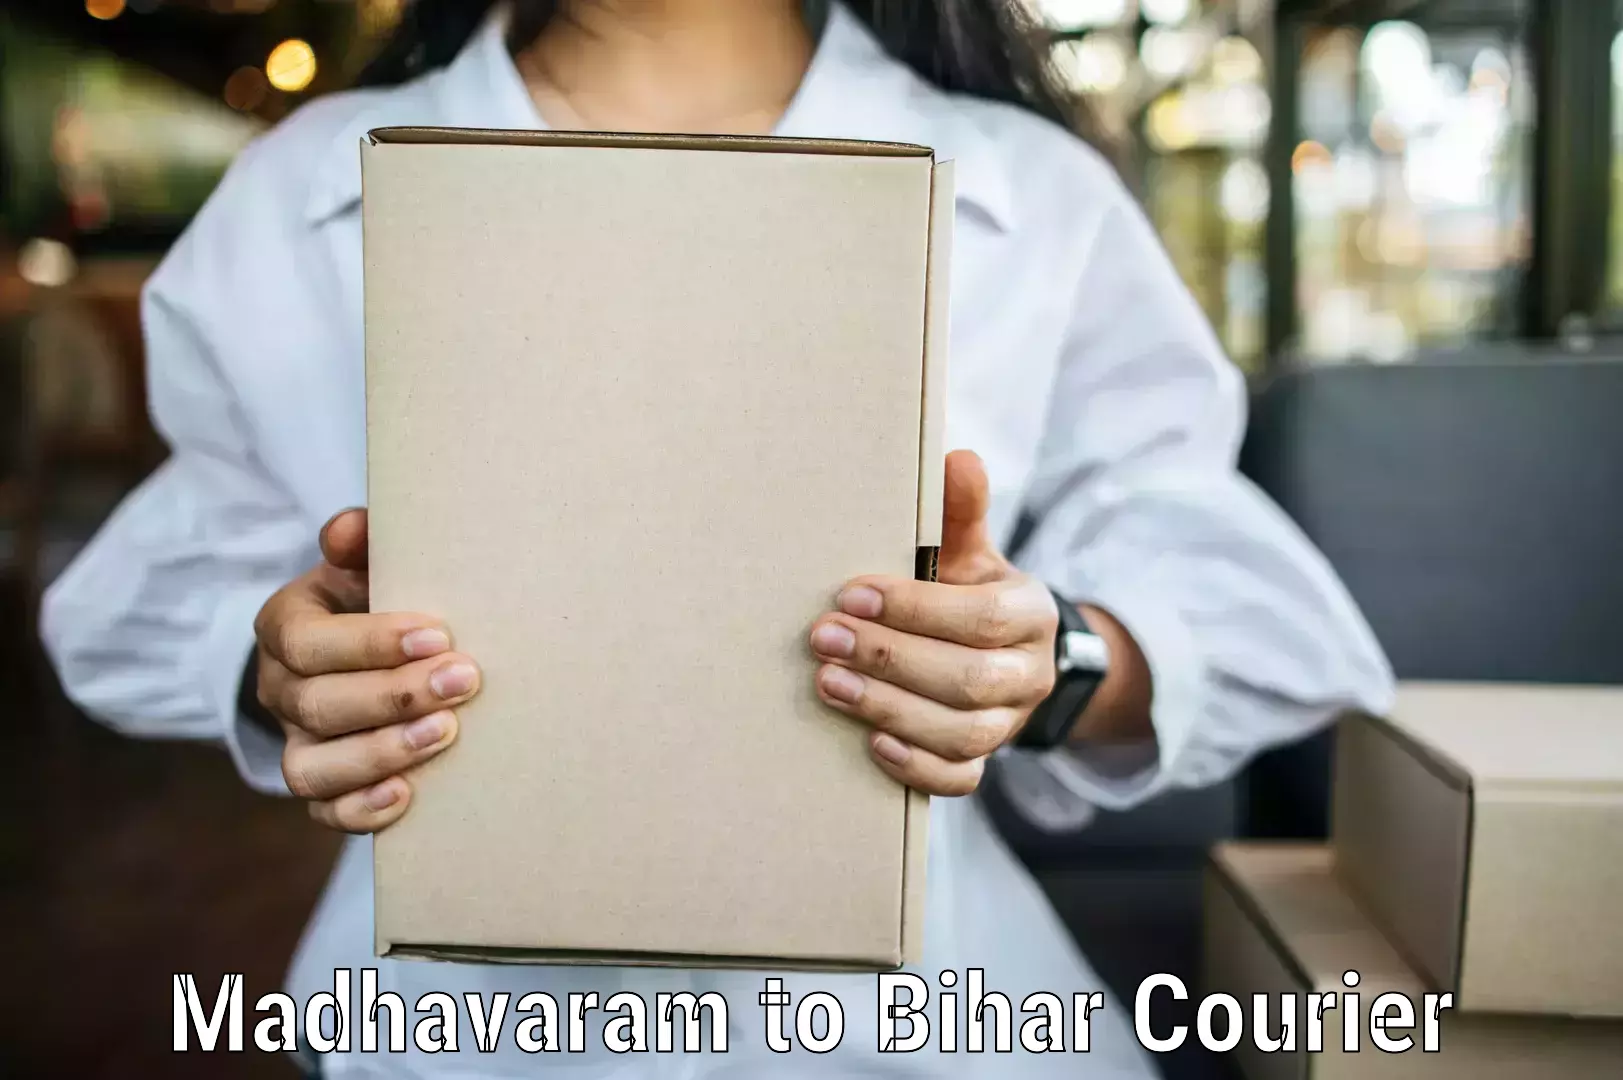 Urgent courier needs Madhavaram to Khodaganj